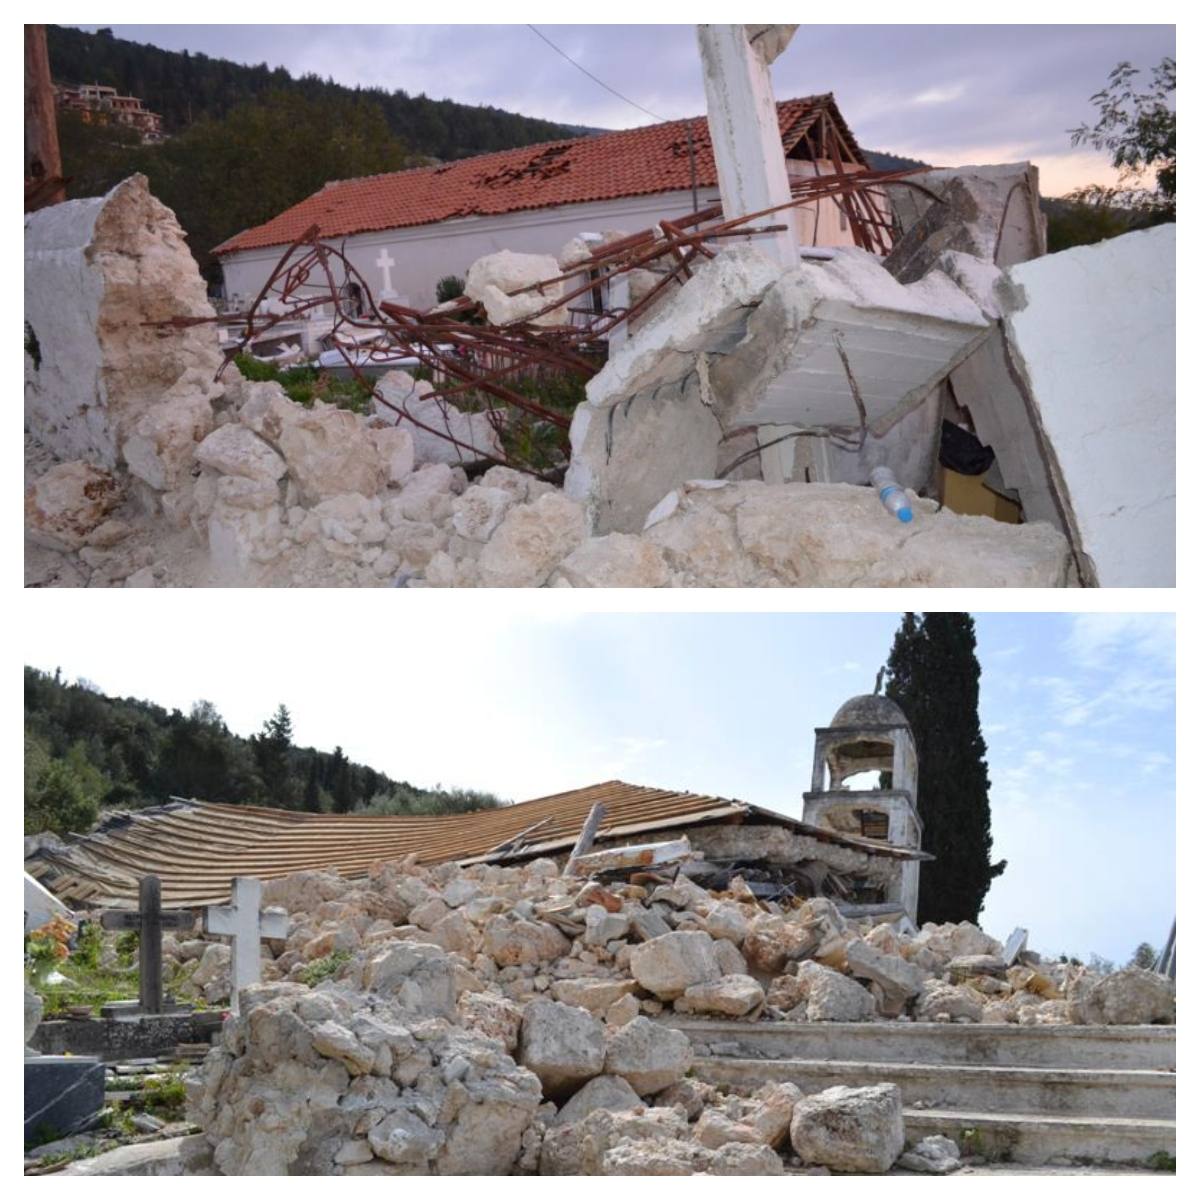 2021.02.12 @ Π.Ε. Λευκάδας: Δημοπρατήθηκαν μελέτες 35.000 ευρώ για την αποκατάσταση της Αγ. Παρασκευής και της Κοιμήσεως Θεοτόκου στο Αθάνι Λευκάδας. #ΠΙΝ #Λευκάδα #Αθάνι #Εκκλησίες #Μελέτες #antipin_lefkada #ΠεριφερειακήΕνότηταΛευκάδας #ΠεριφέρειαΙονίωνΝήσων